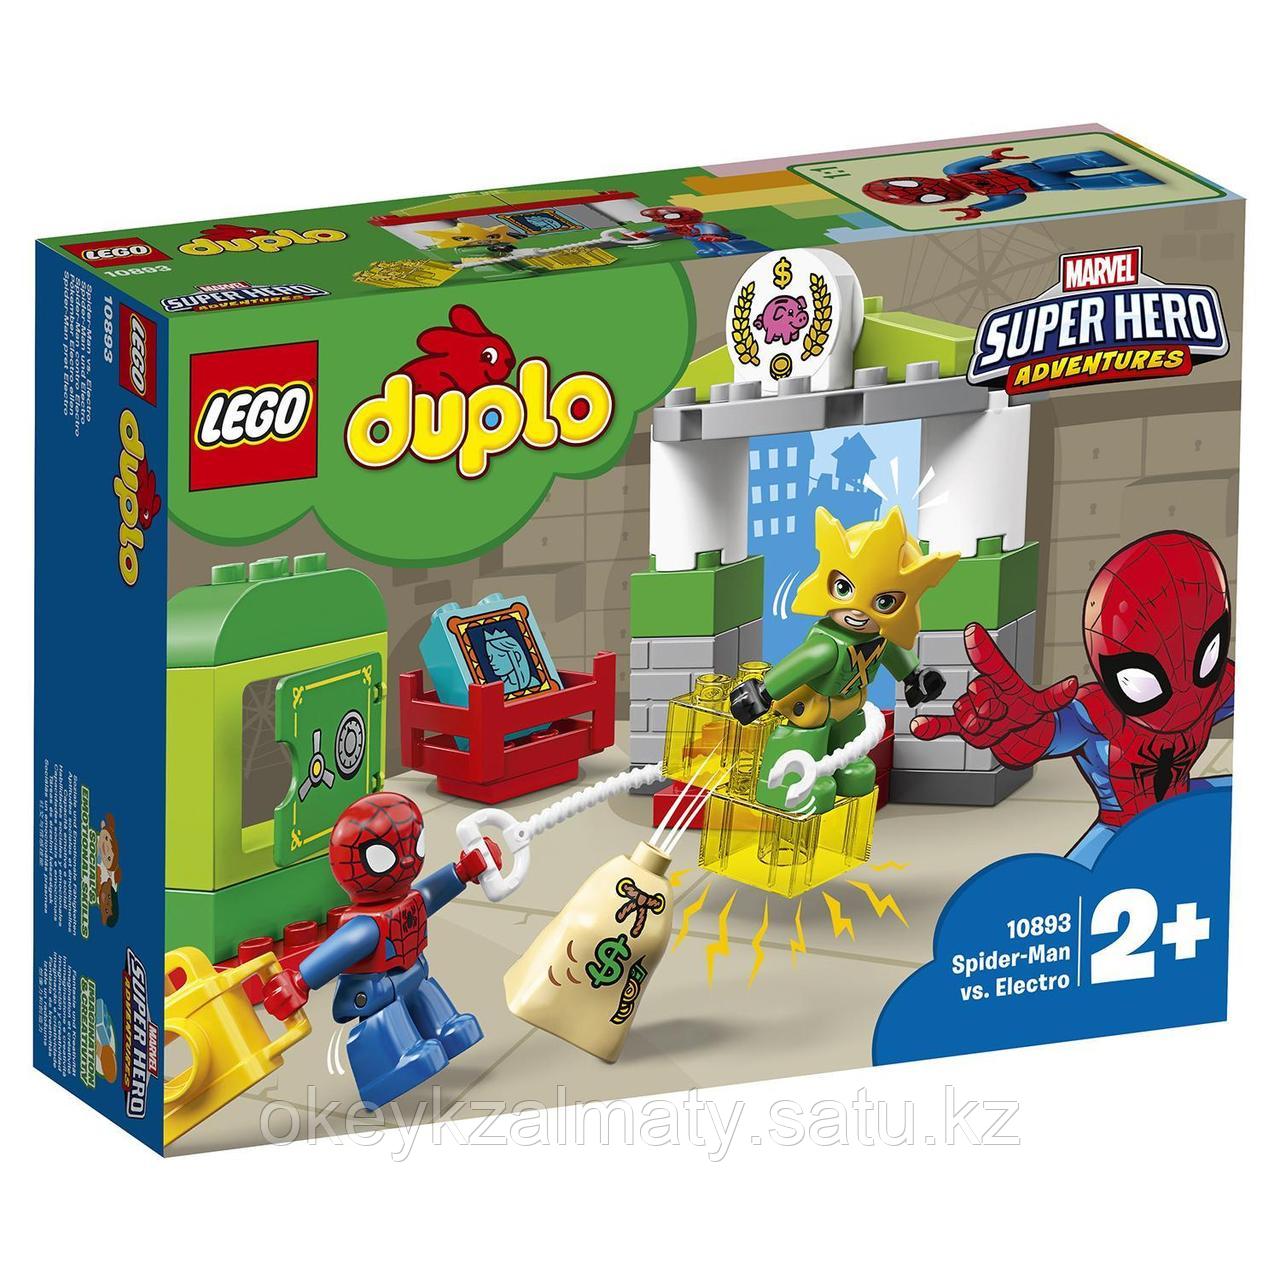 LEGO Duplo: Super Heroes: Человек-паук против Электро 10893